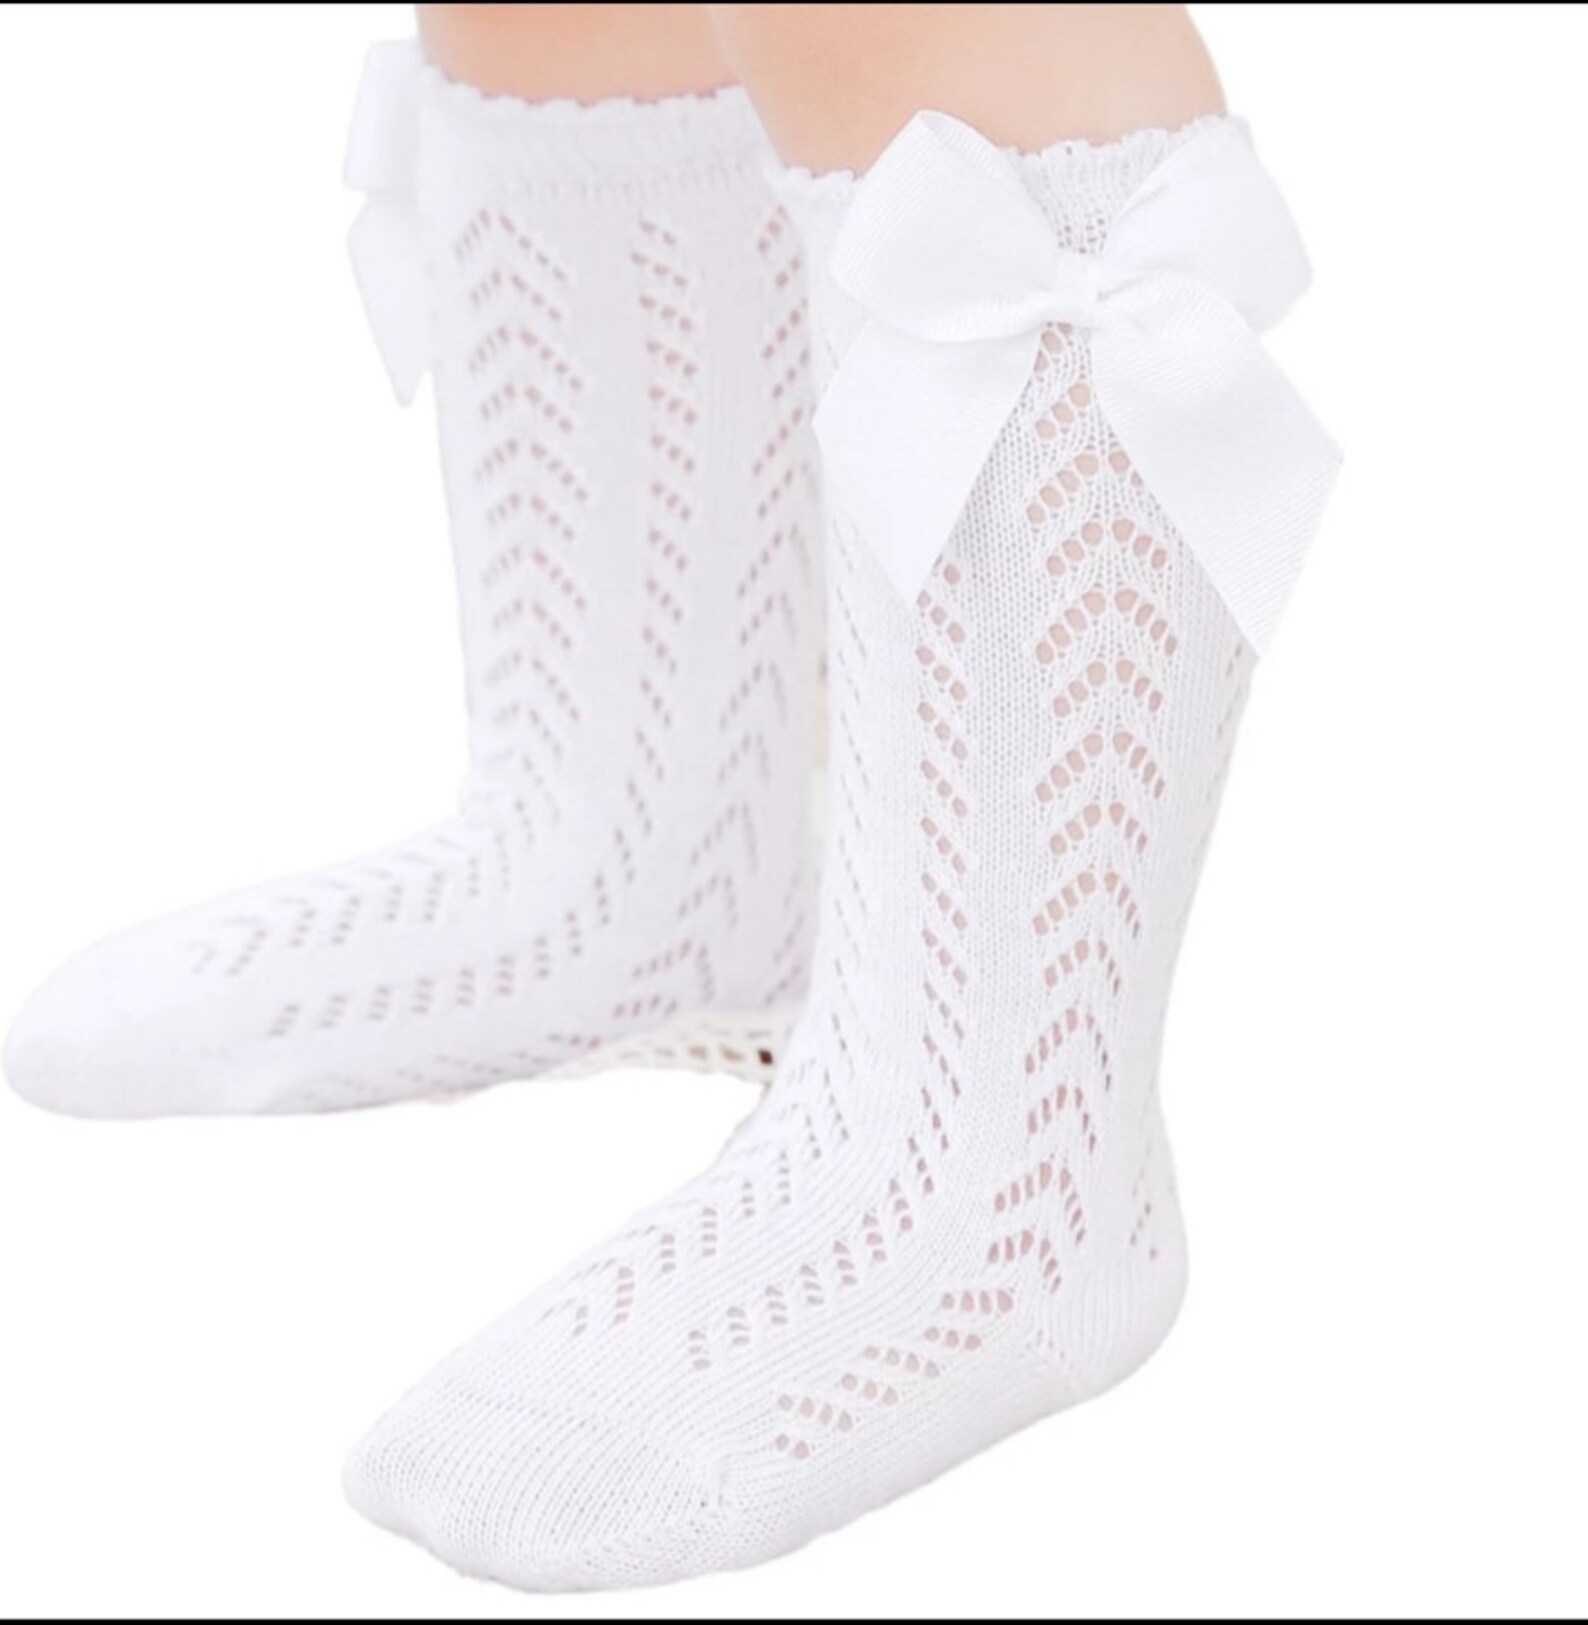 Baby Girl Long Knit Bow Socks Stockings White - Etsy